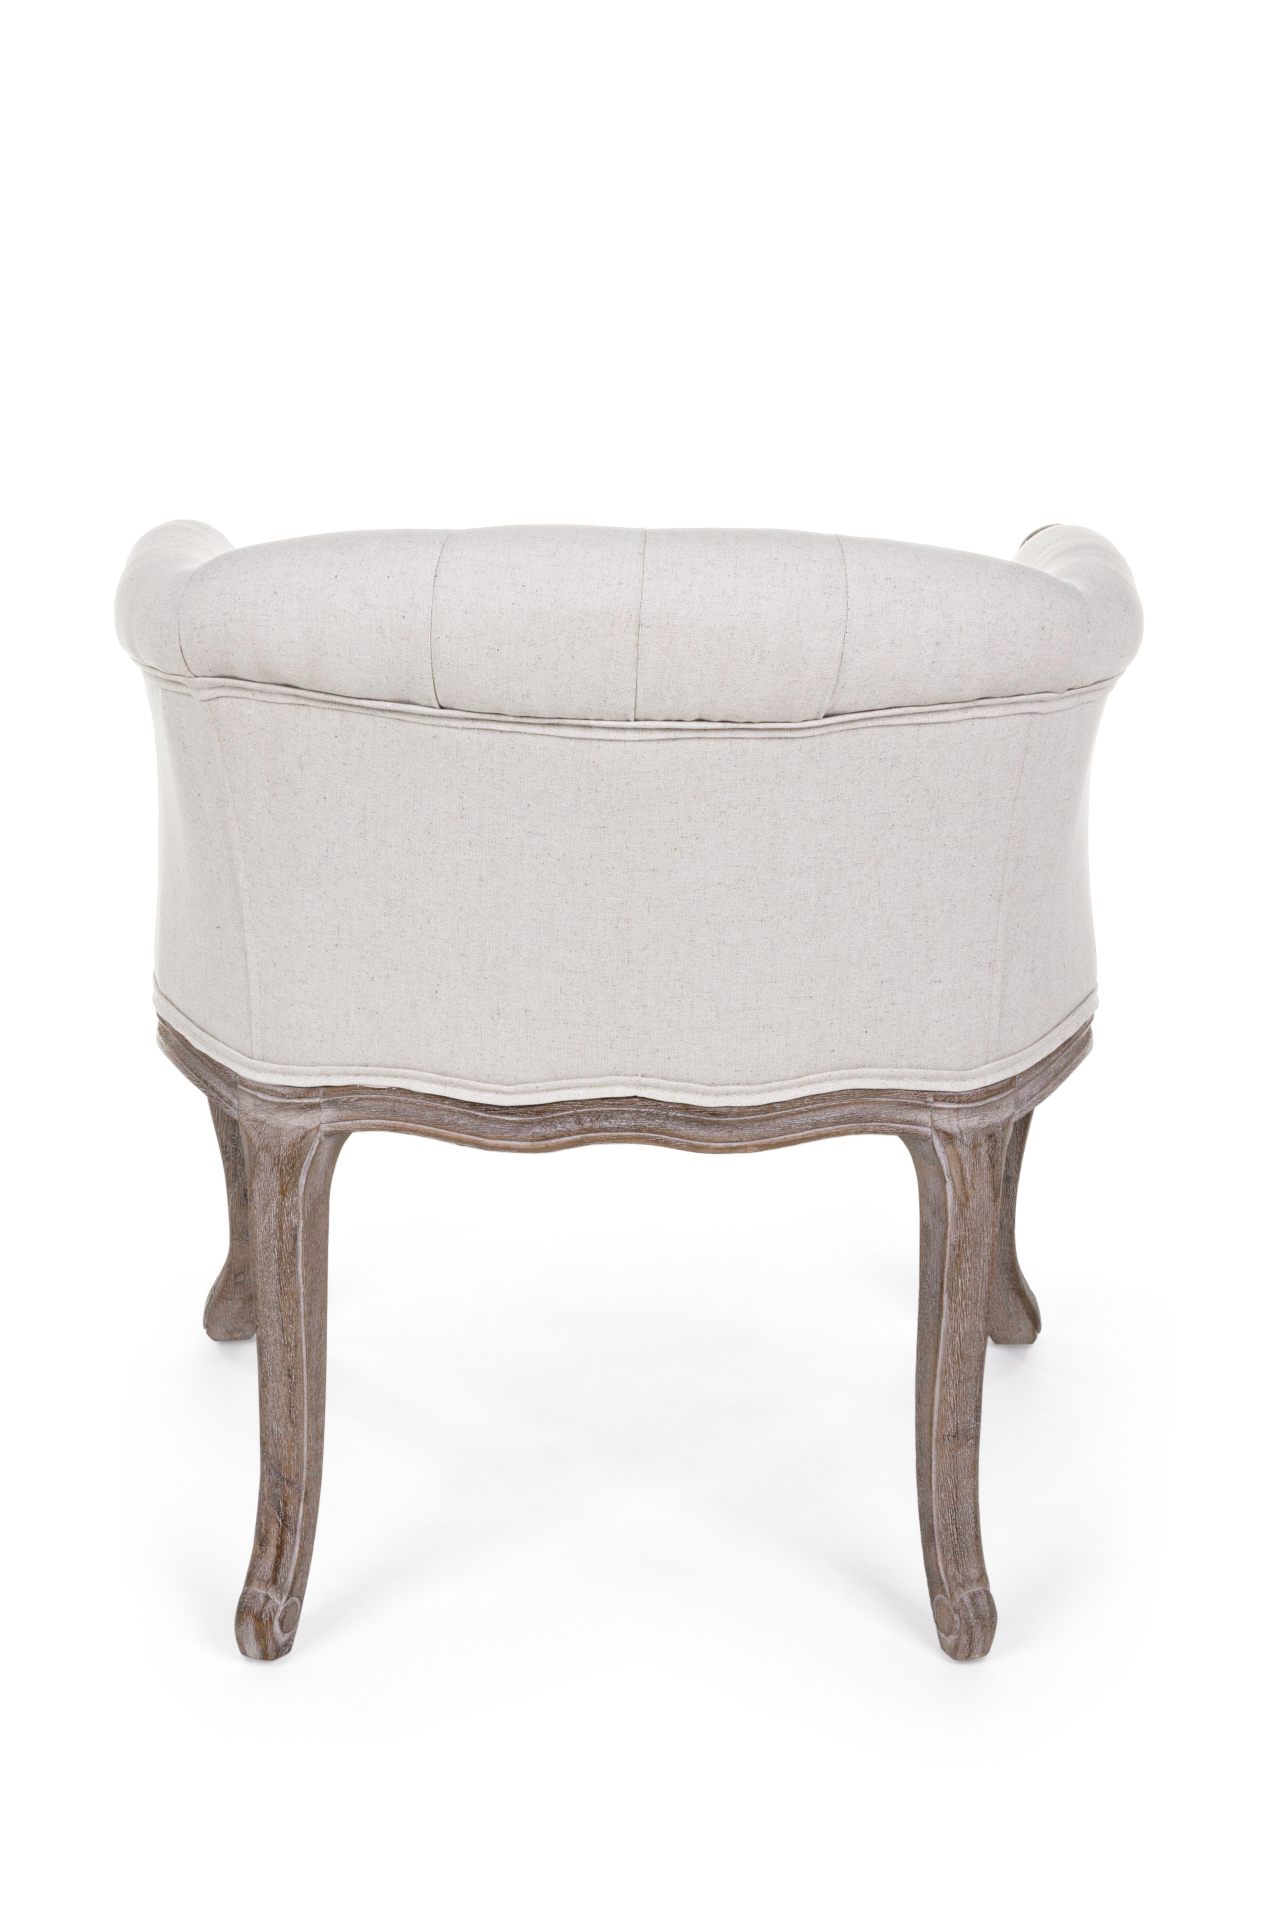 Der Sessel Diva überzeugt mit seinem klassischen Design. Gefertigt wurde er aus Stoff, welcher einen weißen Farbton besitzt. Das Gestell ist aus Kautschukholz und hat eine natürliche Farbe. Der Sessel besitzt eine Sitzhöhe von 43 cm. Die Breite beträgt 60